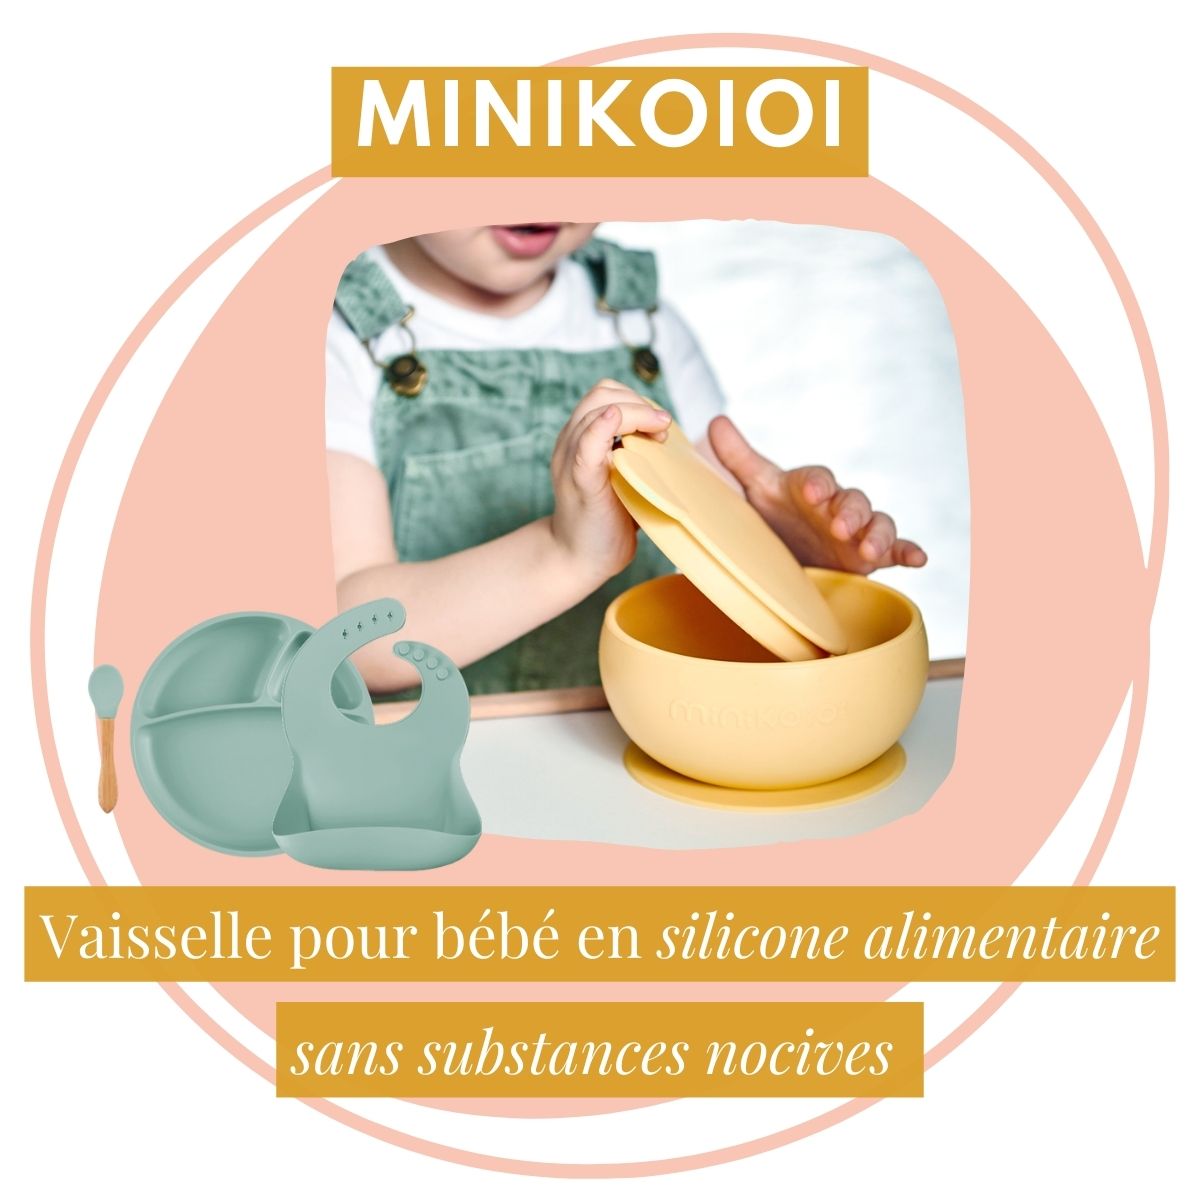 Minikoioi, vaisselle pour bébé en silicone alimentaire